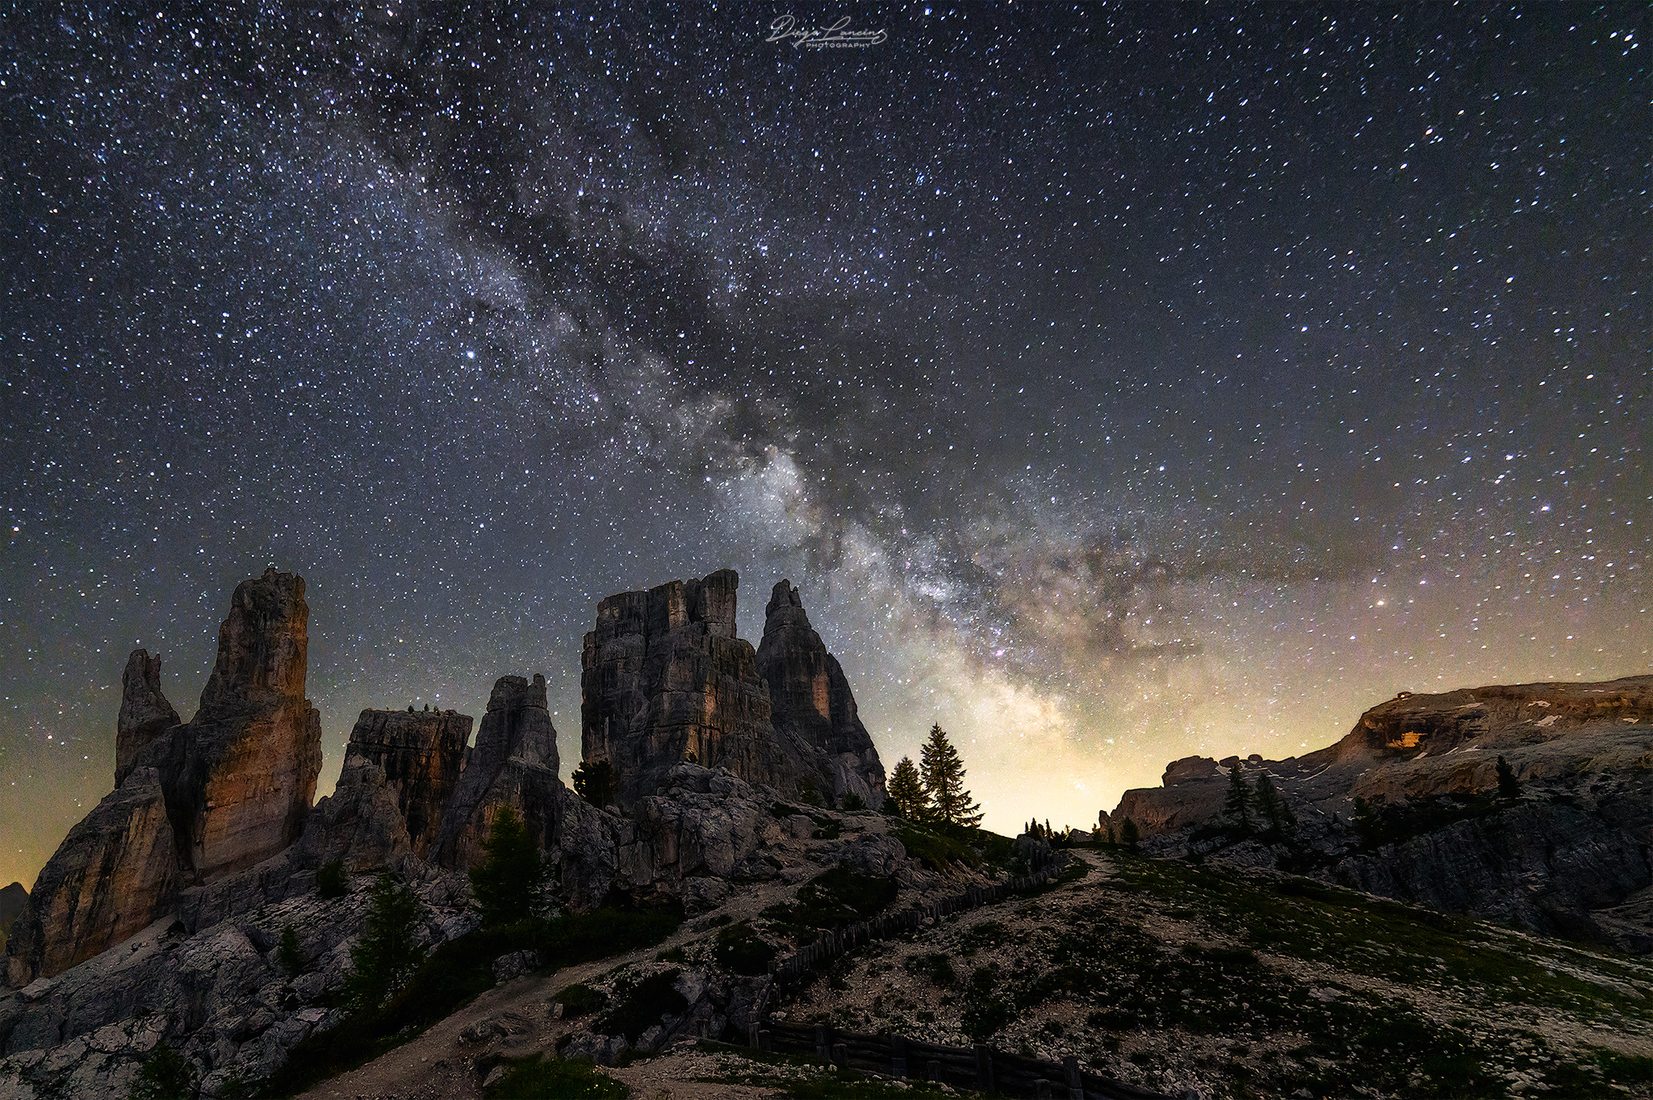 Milky Way over the Cinque Torri, Italy